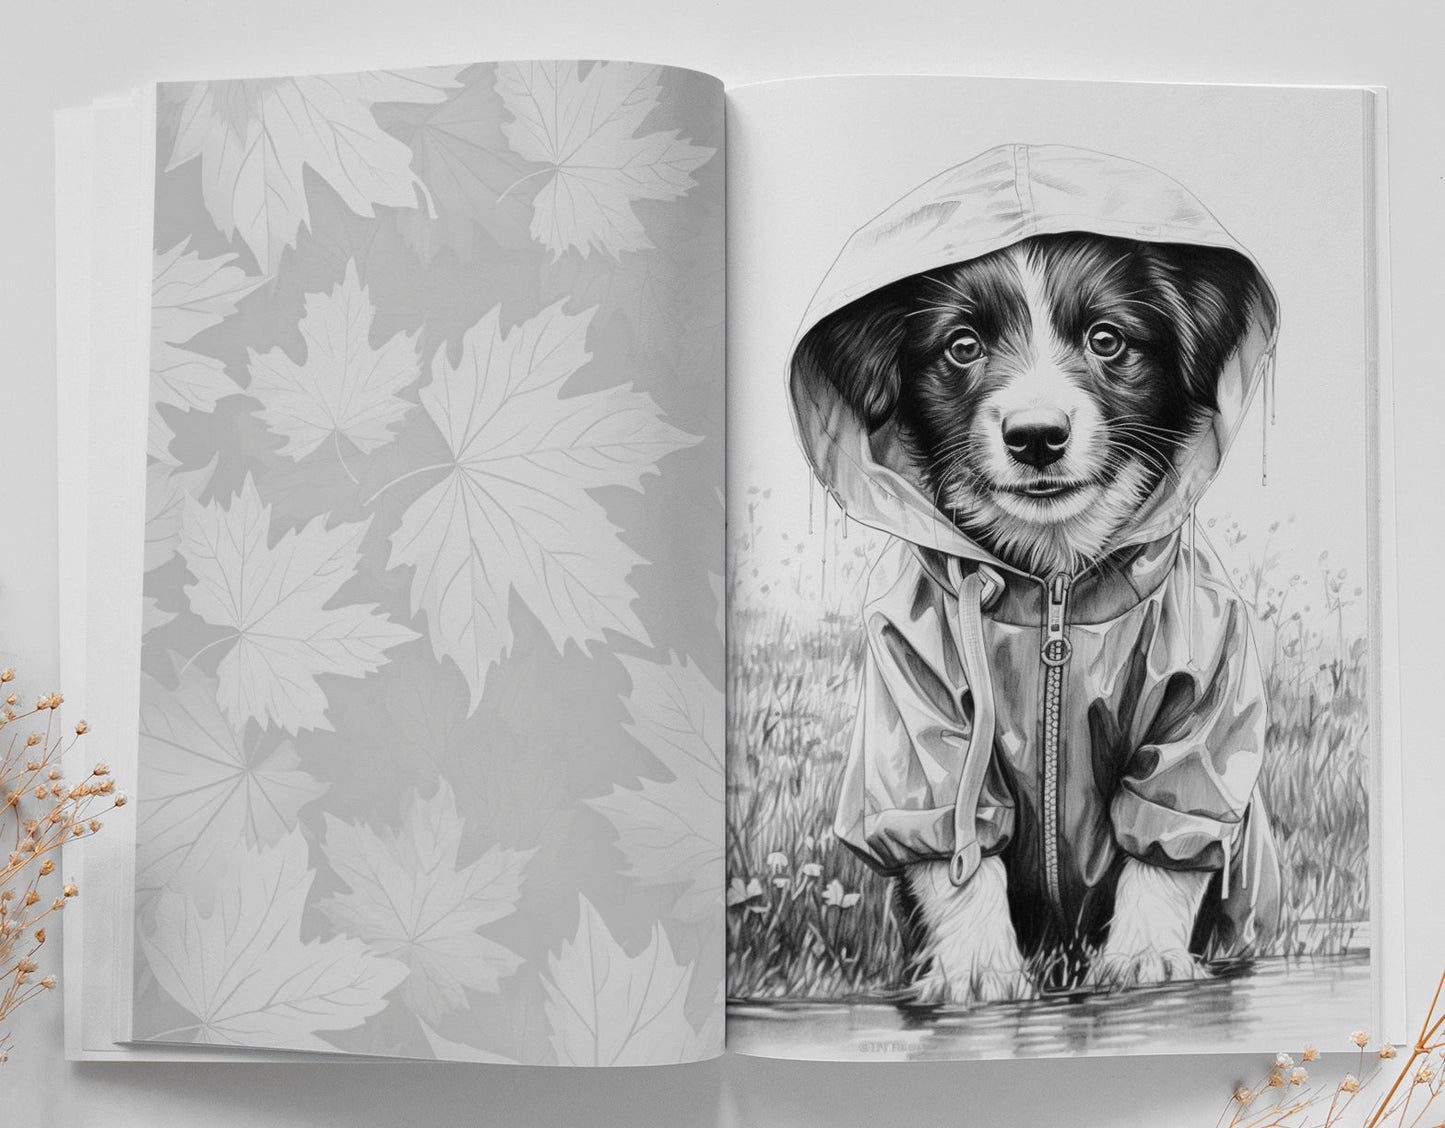 Herbst Hunde Malbuch Graustufen (Digital) - Monsoon Publishing